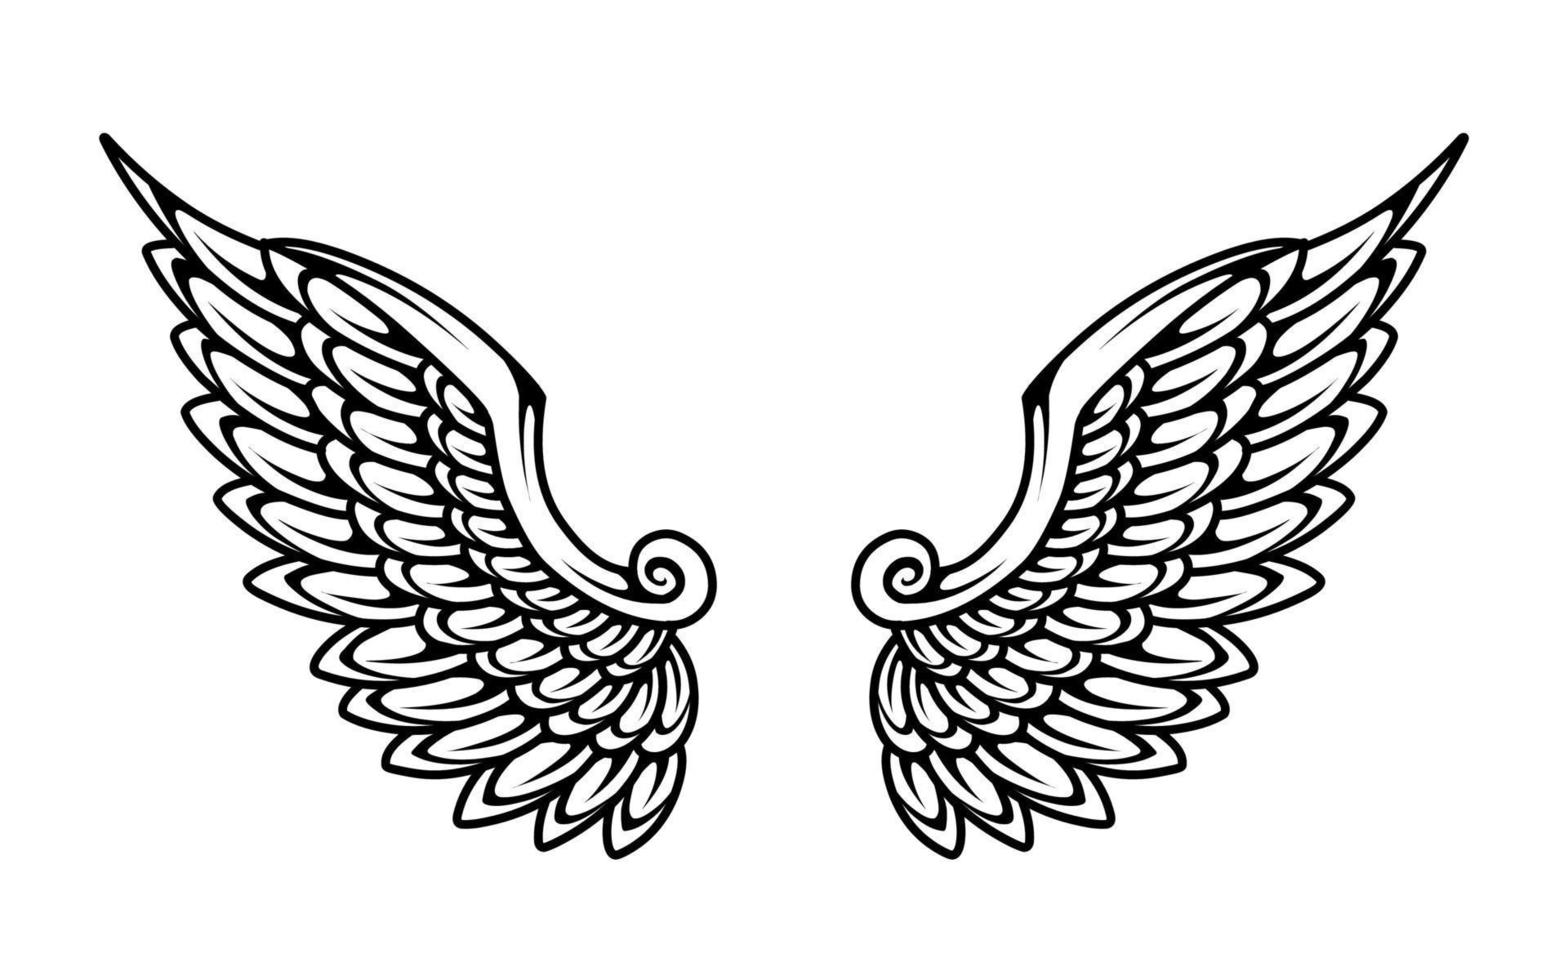 uma Preto e branco ilustração do uma par do anjo asas vetor